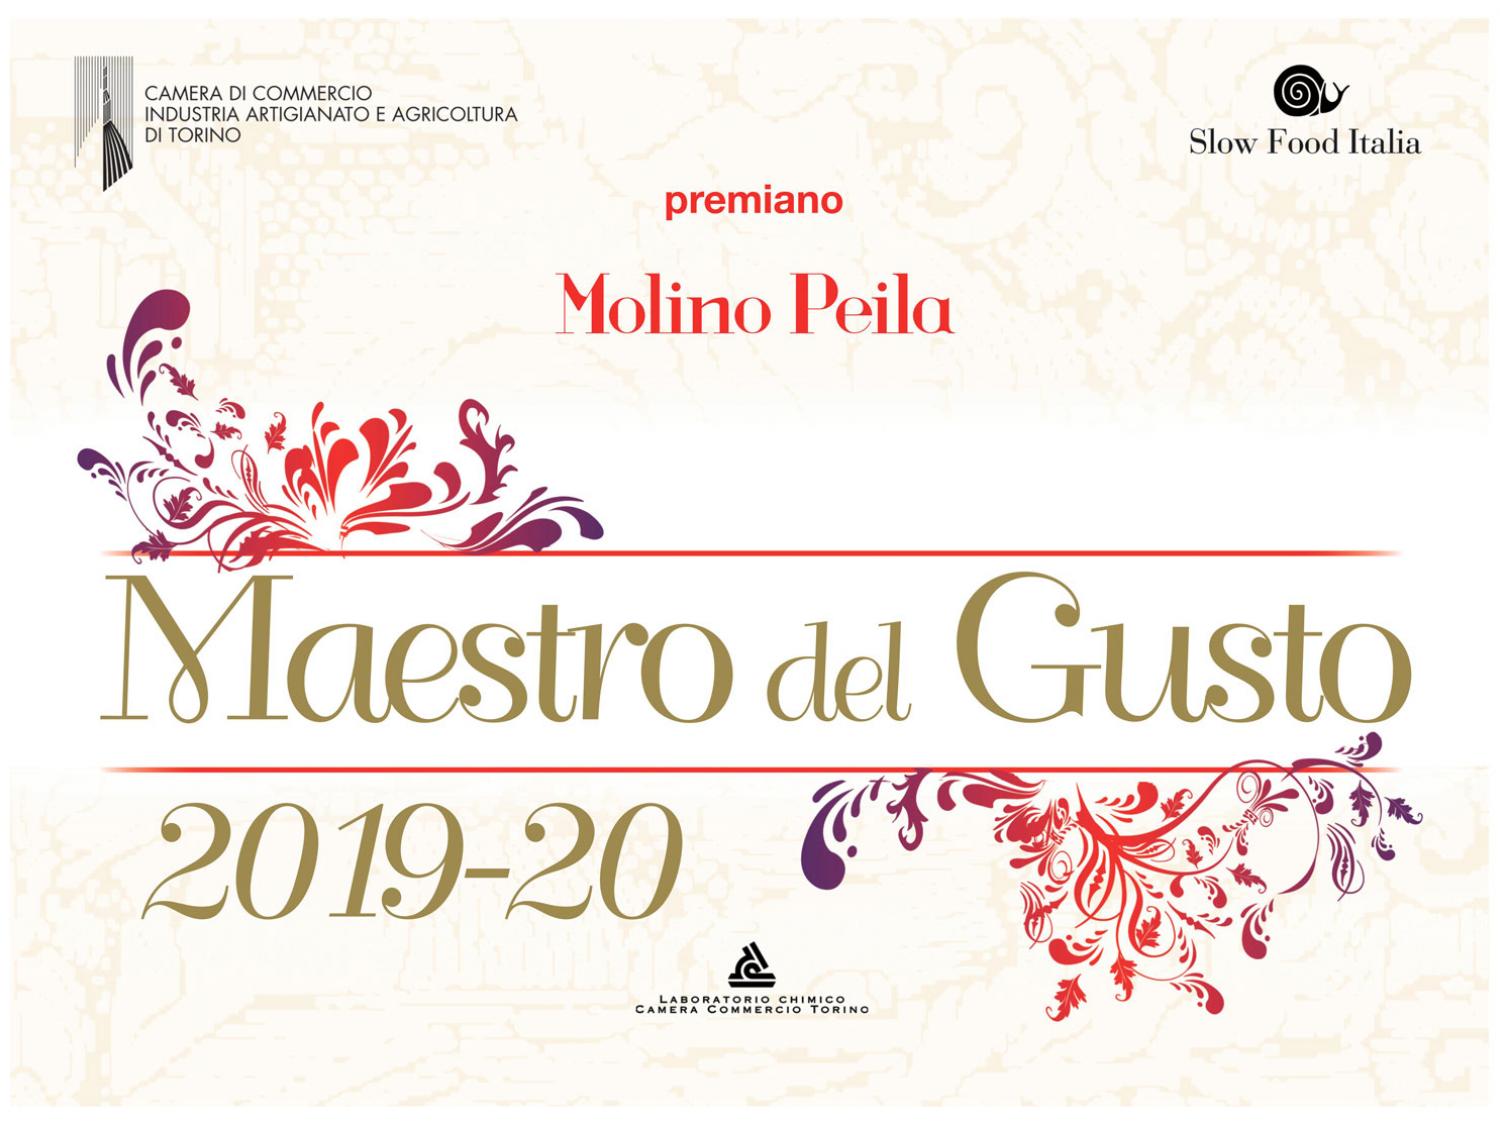 Molino Peila - Maestro del Gusto's certificate 2019/20